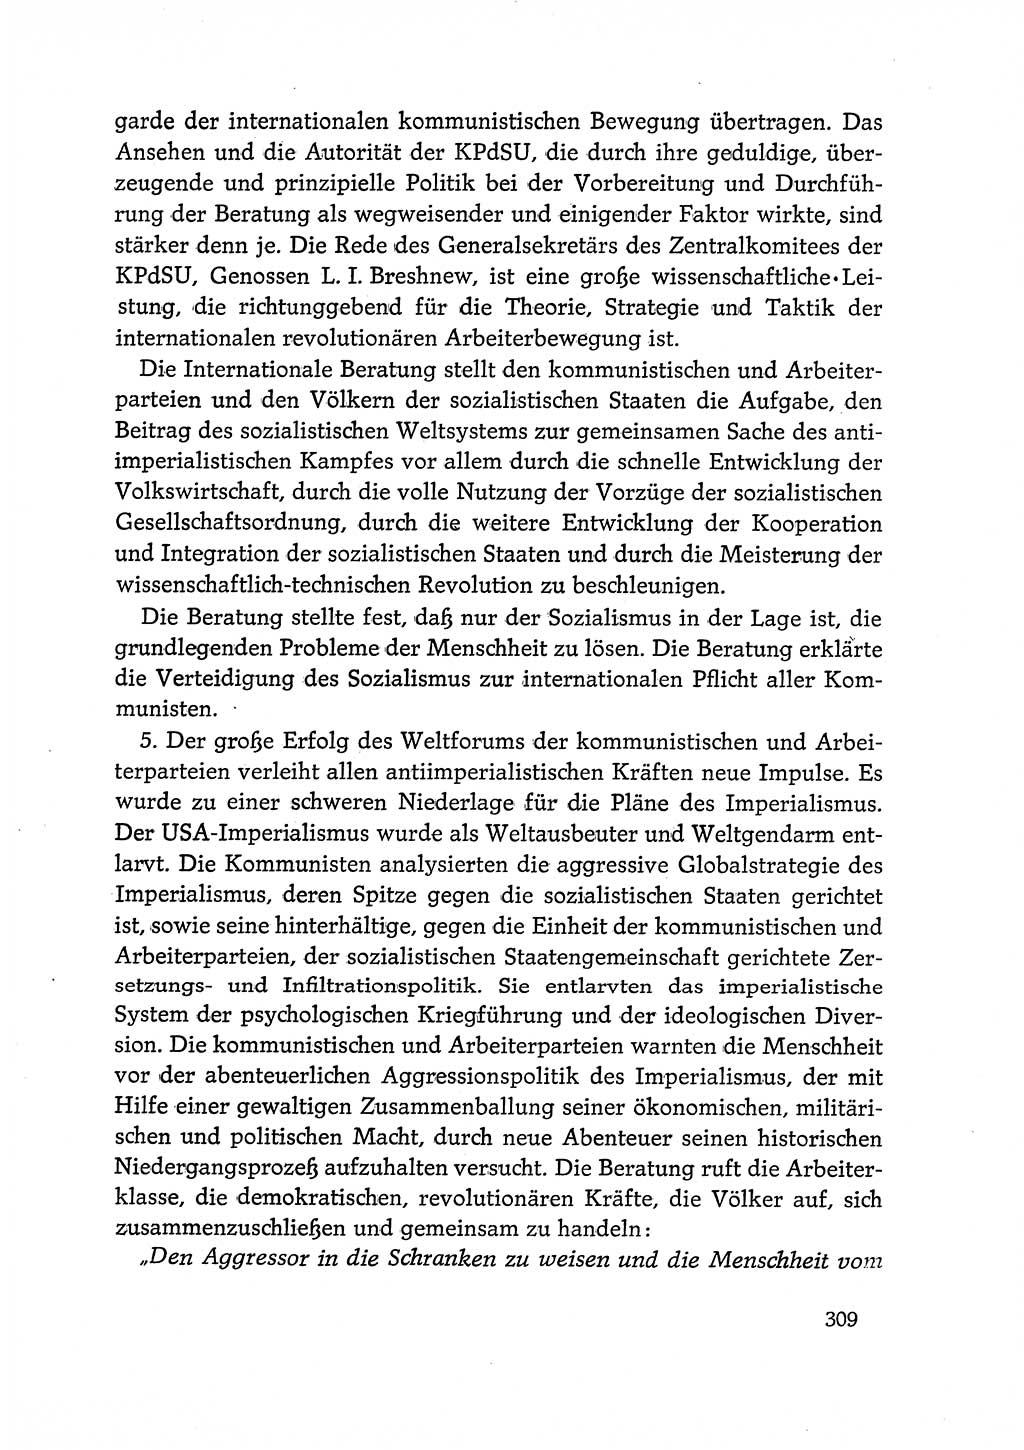 Dokumente der Sozialistischen Einheitspartei Deutschlands (SED) [Deutsche Demokratische Republik (DDR)] 1968-1969, Seite 309 (Dok. SED DDR 1968-1969, S. 309)